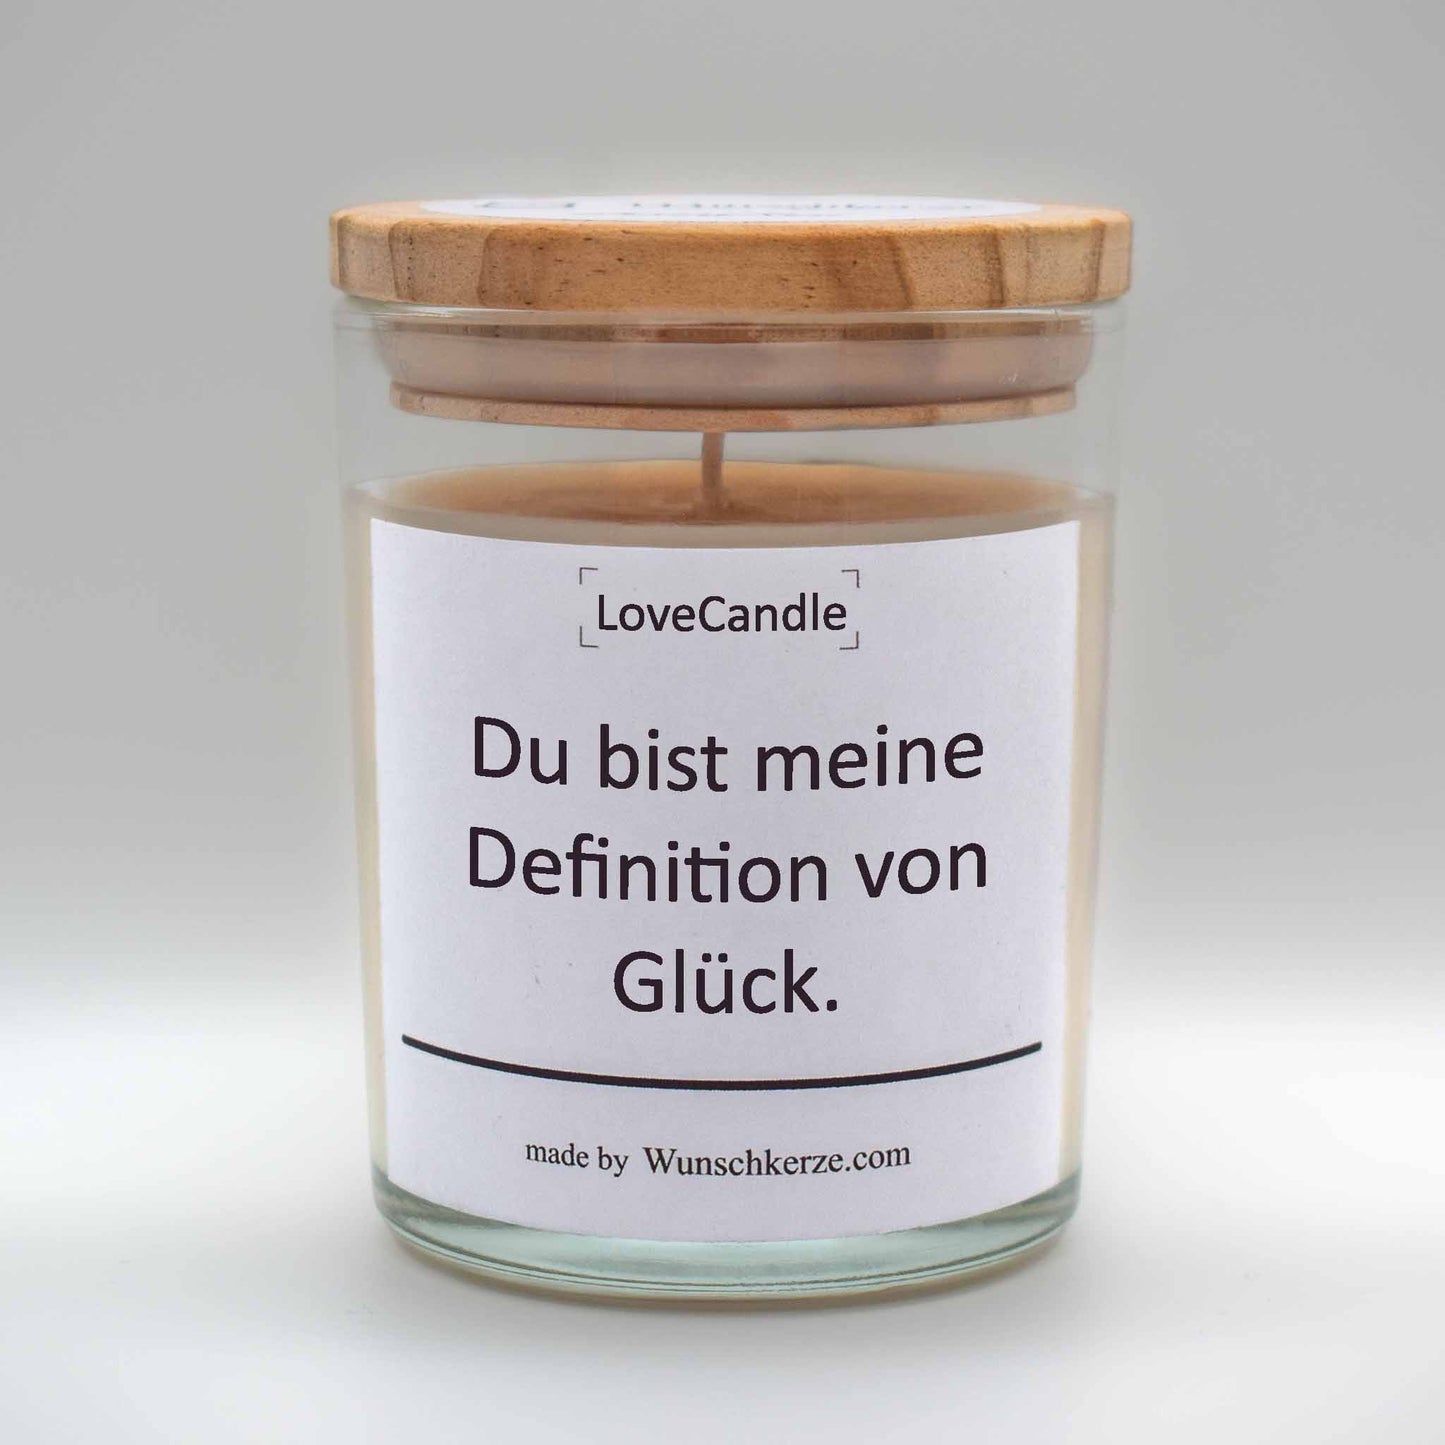 Soja Duftkerze im Glas mit Deckel aus Kiefernholz mit einem Label. Aufschrift:  LoveCandle - Du bist meine Definition von Glück.